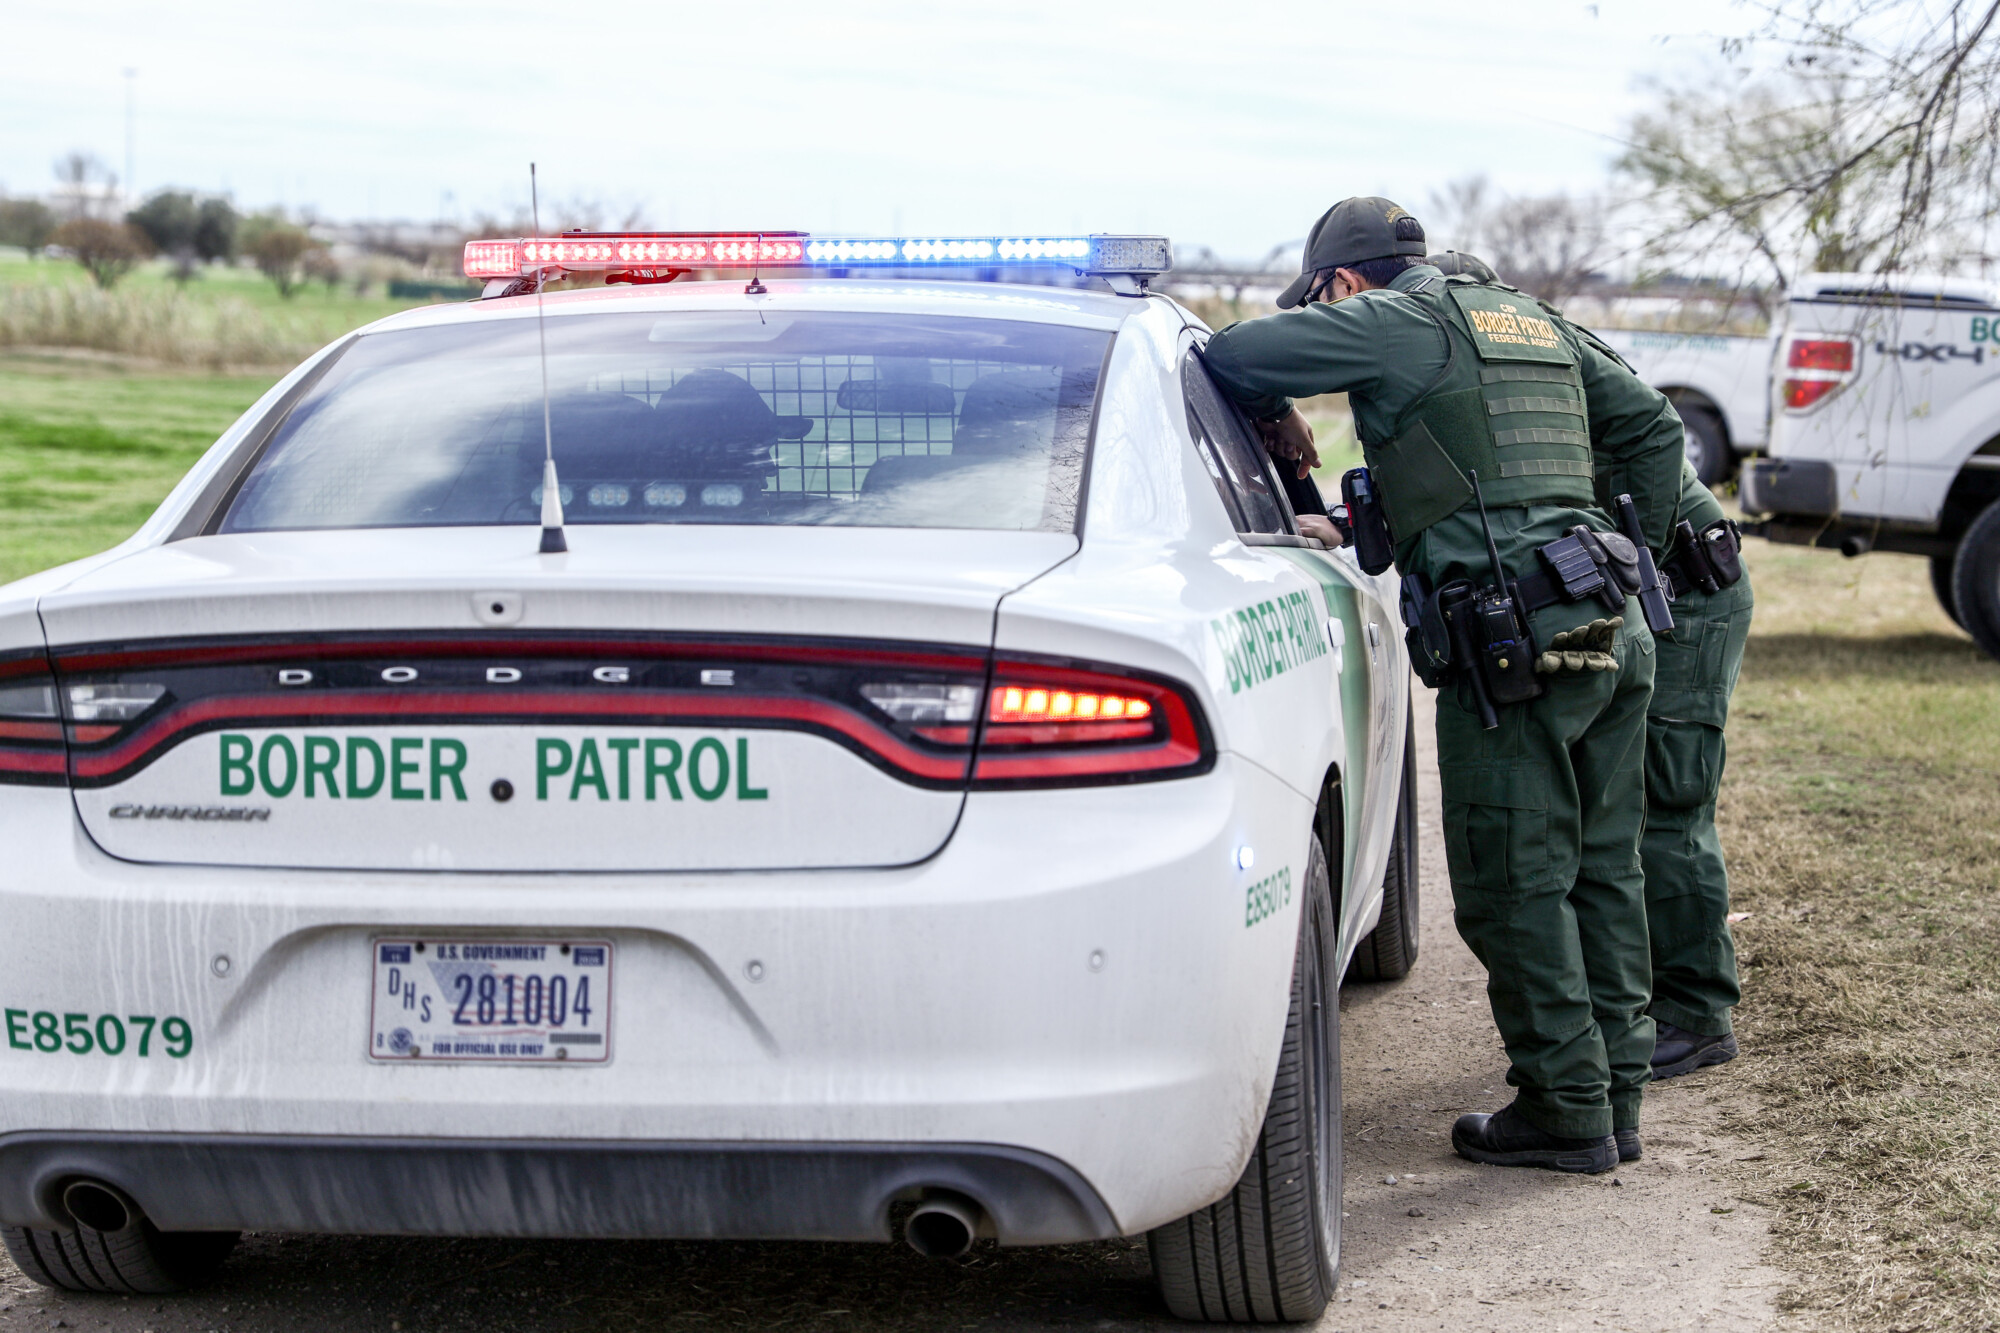 Persecuciones vehiculares se agravan en la frontera de Texas en medio de la crisis migratoria